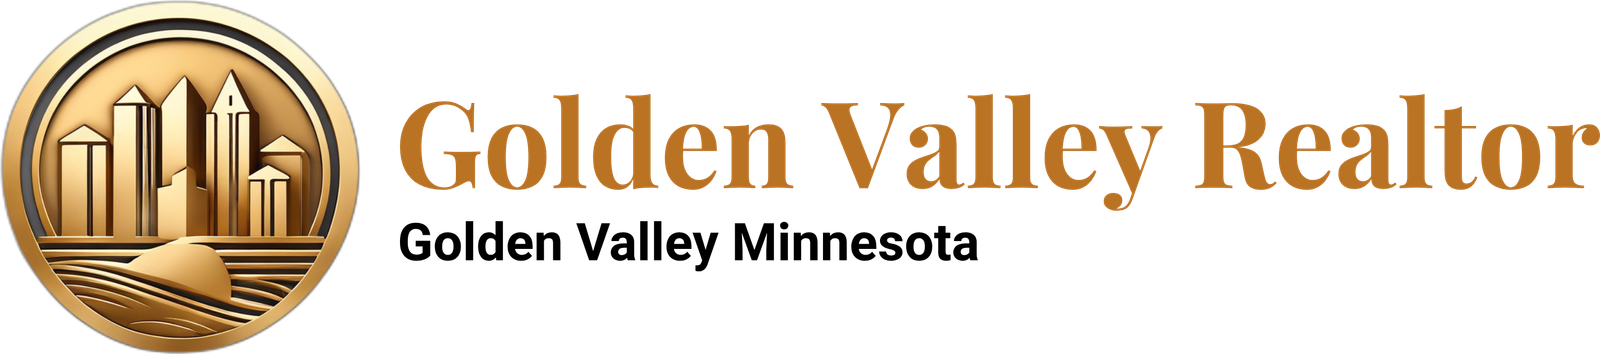 Golden Valley Realtor | Golden Valley Minnesota